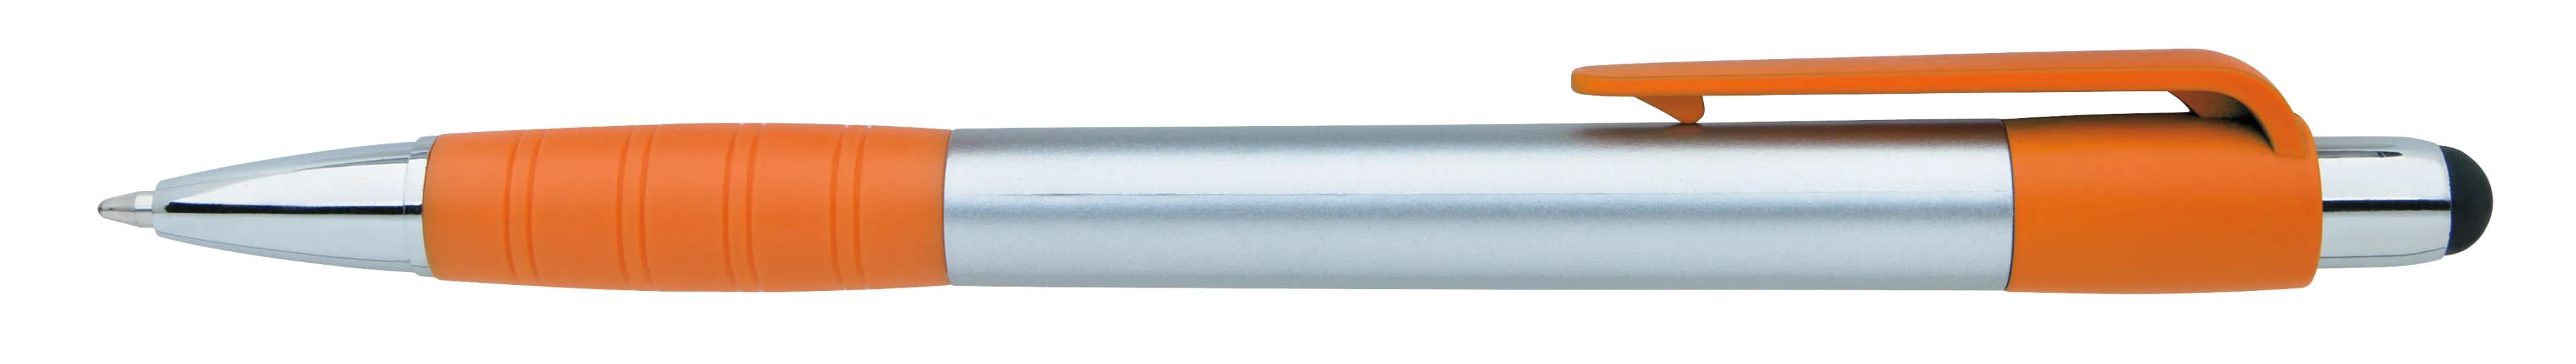 Silver Element Stylus Pen 14 of 53